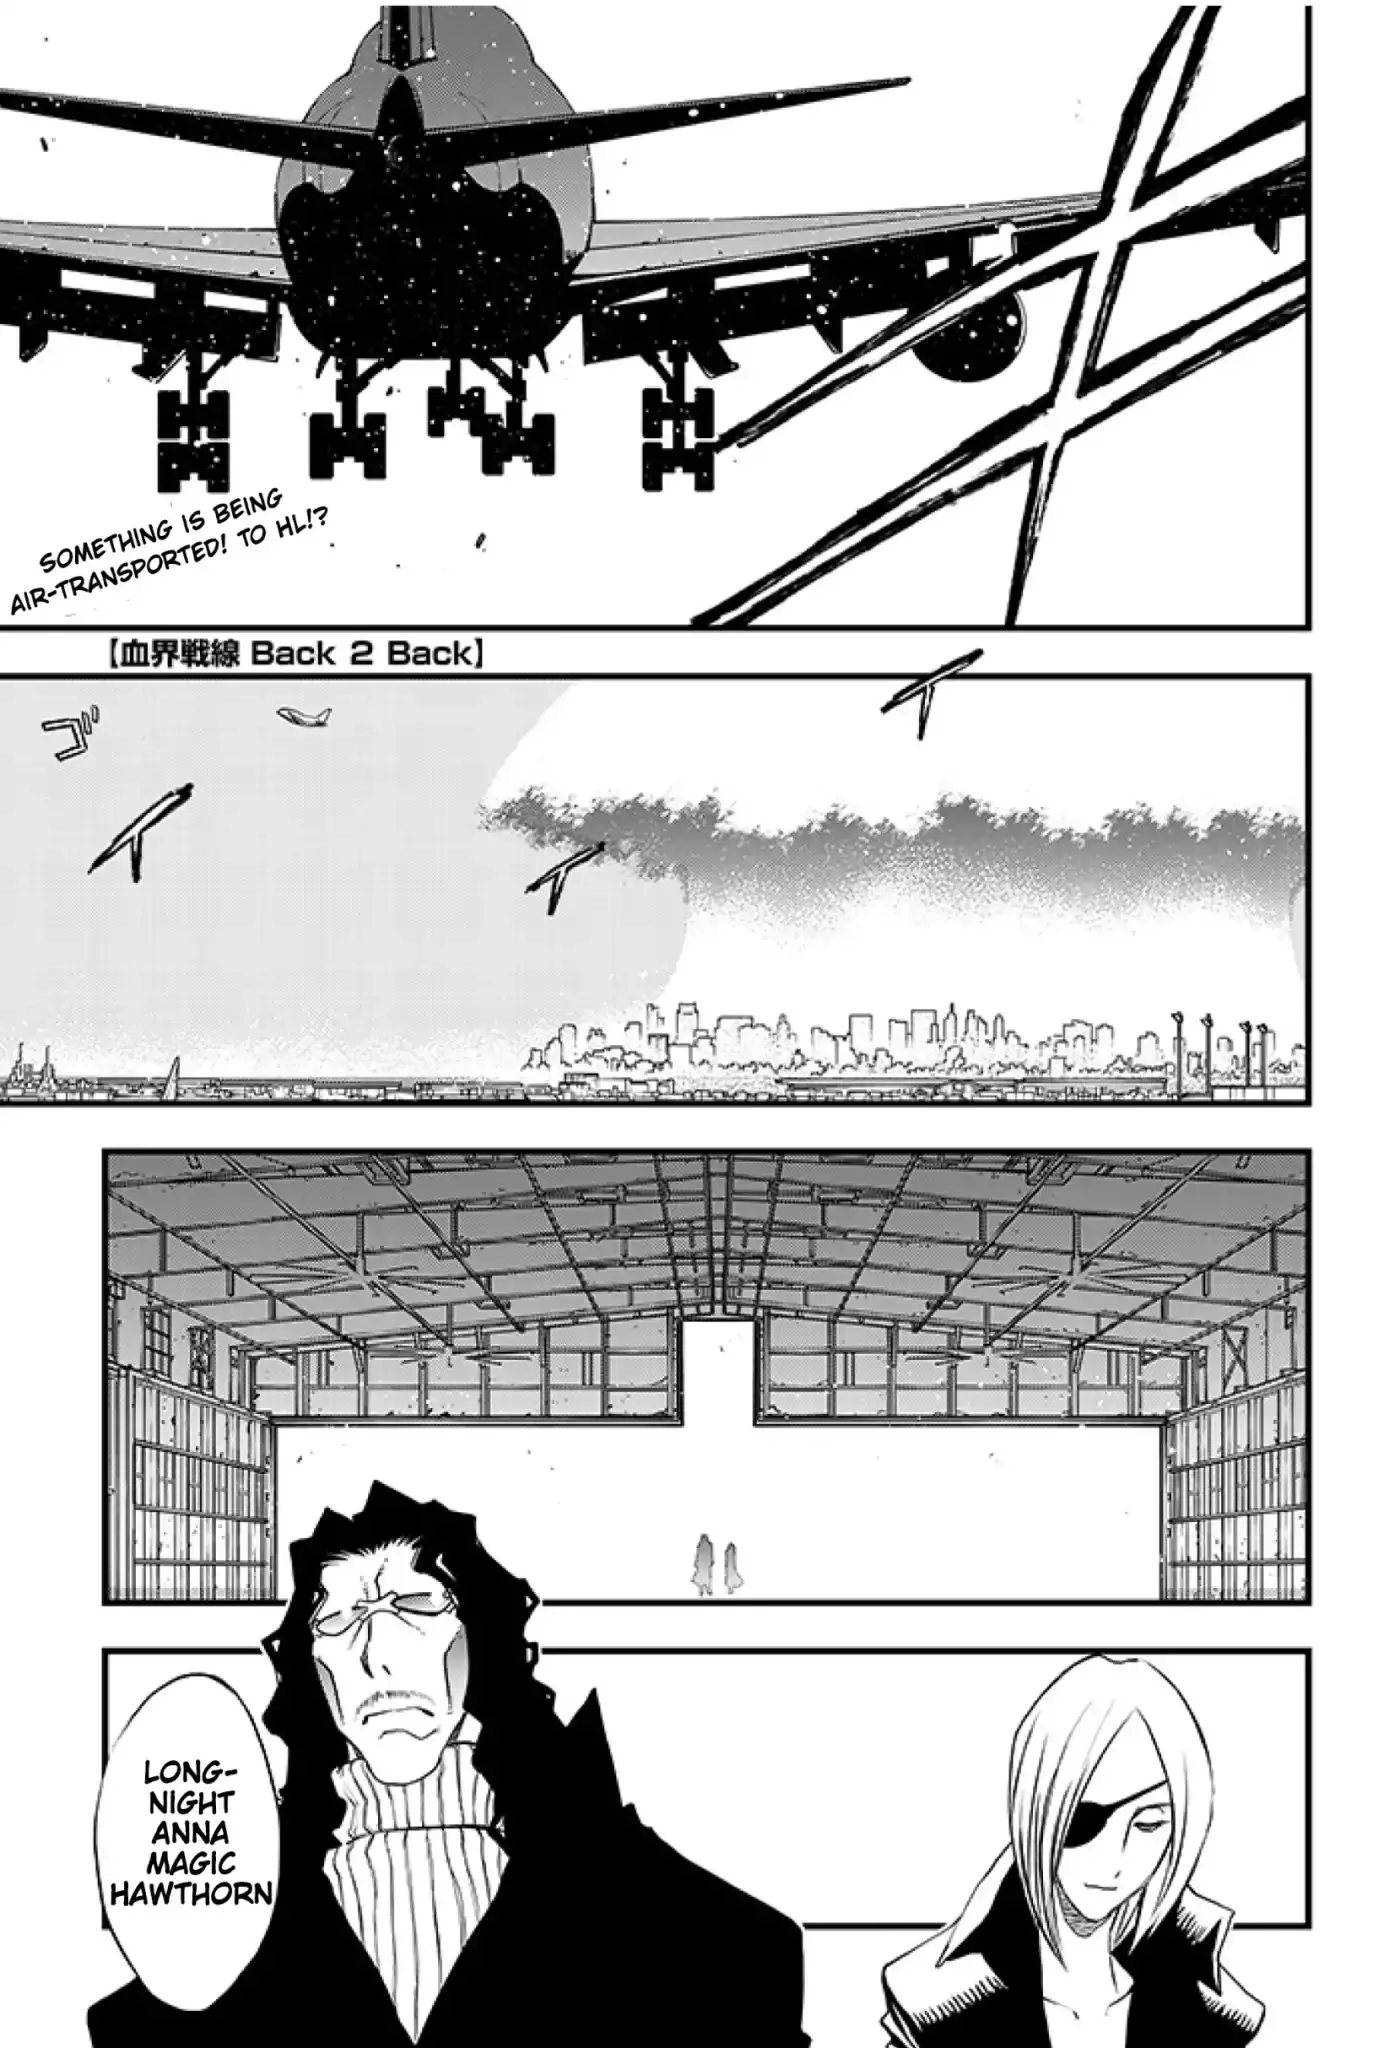 Kekkai Sensen - Back 2 Back - 16 page 52